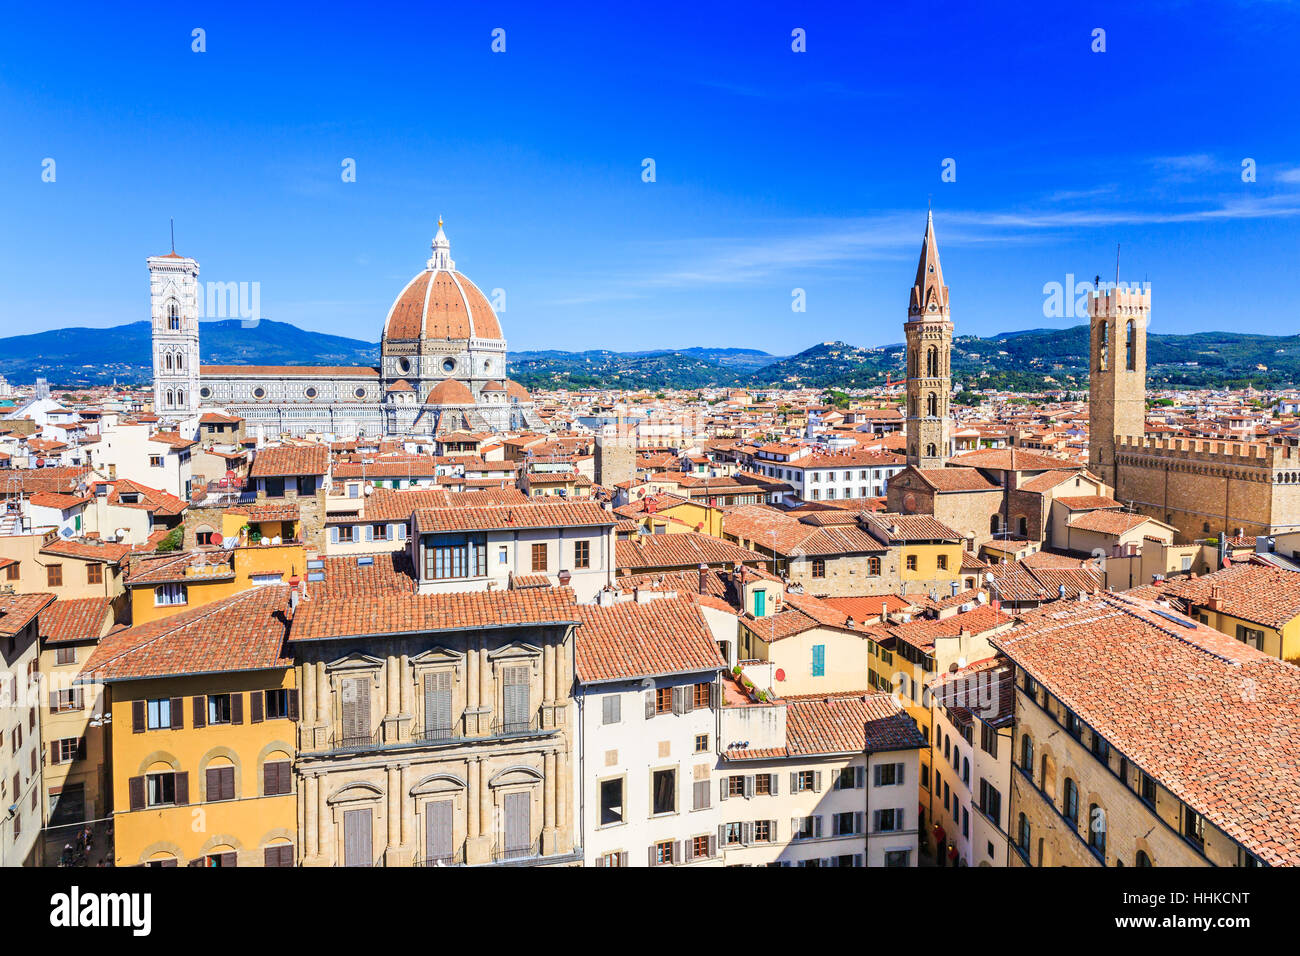 Firenze, Italia. Palazzo del Bargello, Torre Badia Fiorentina il campanile e il Duomo con la cupola del Brunelleschi. Foto Stock